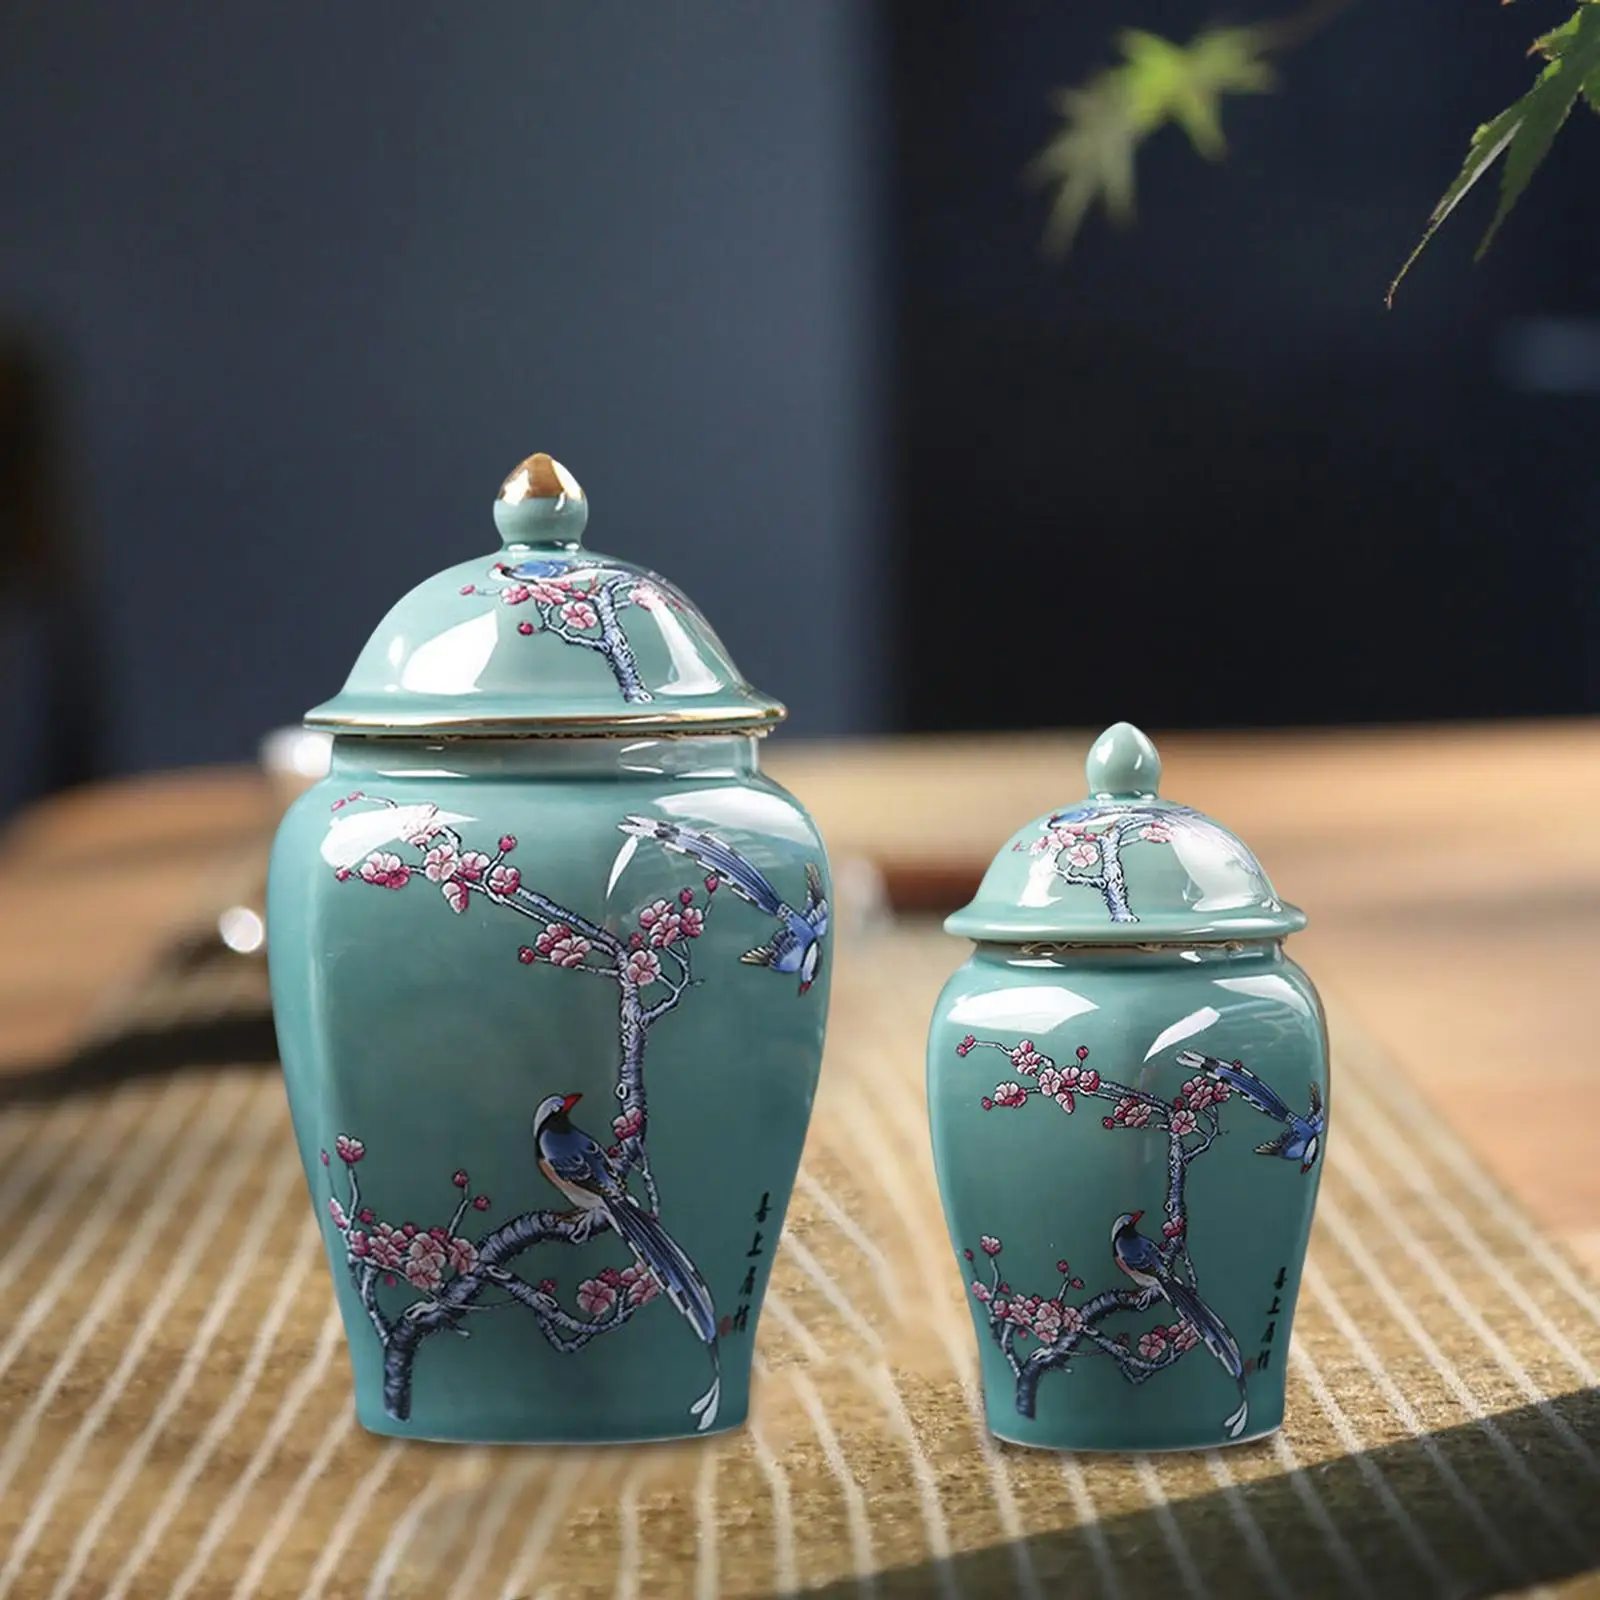 Ceramic Ginger Jar Tea Canister Flowerpot Oriental Ornament Handicraft Gift Holder Flower Vase for Wedding Countertop Home Decor